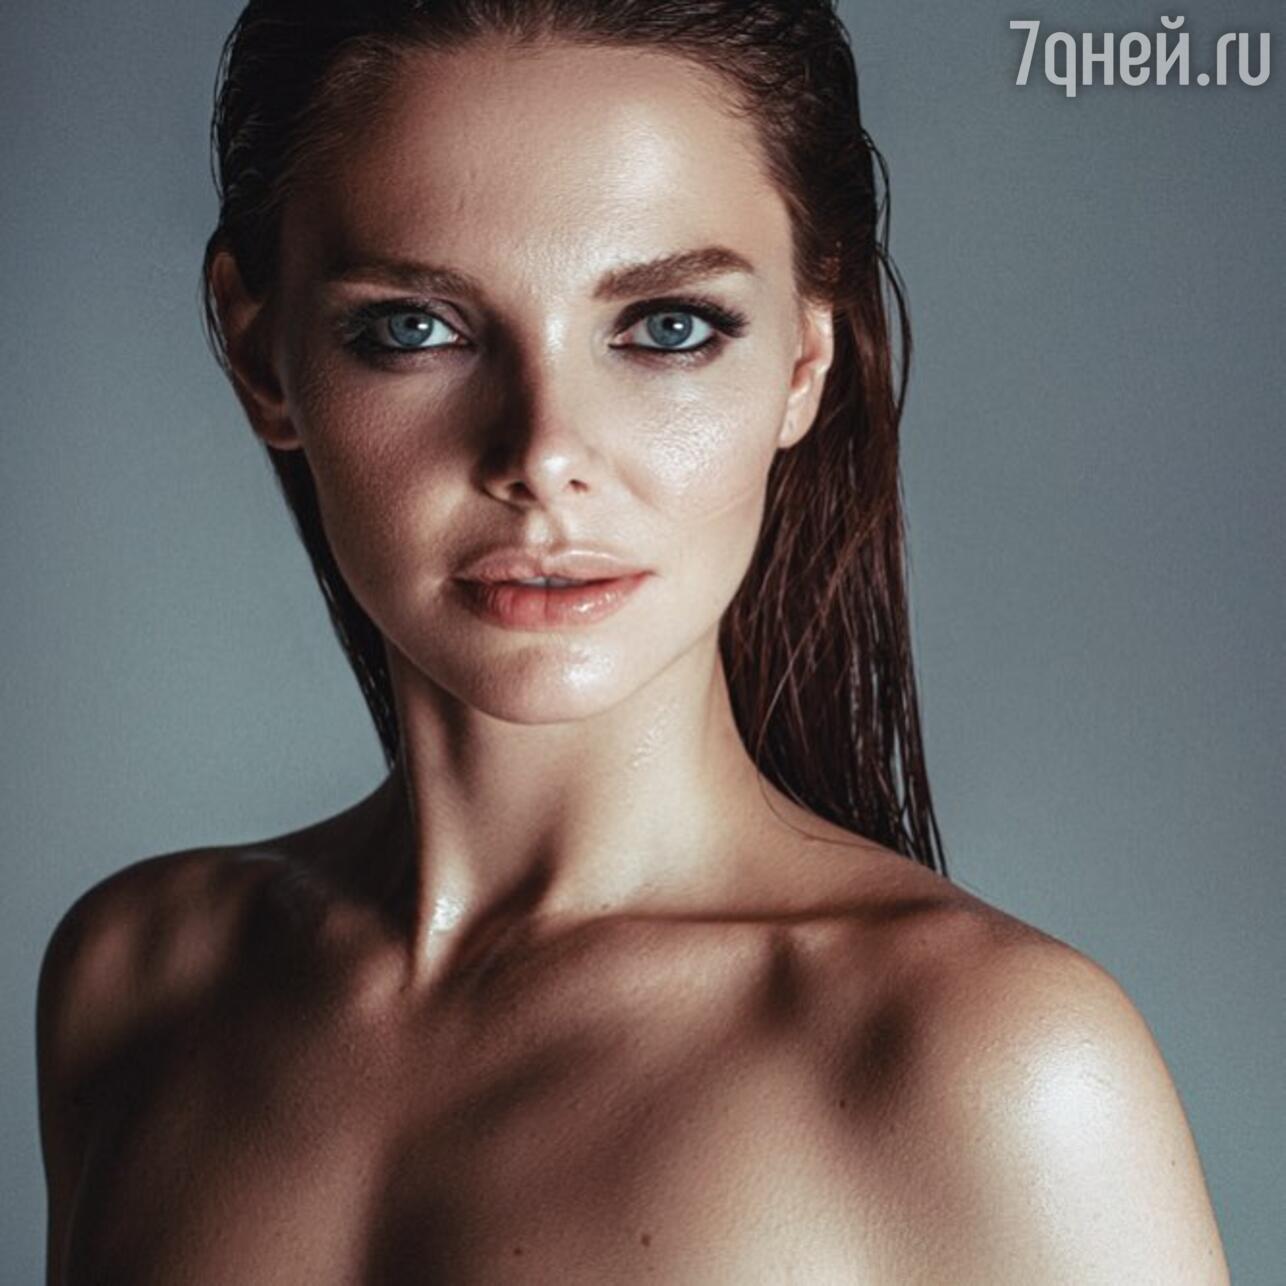 Лиза Василенко слив, горячие фото голой Лизы, топлес, задница, груди, засветы